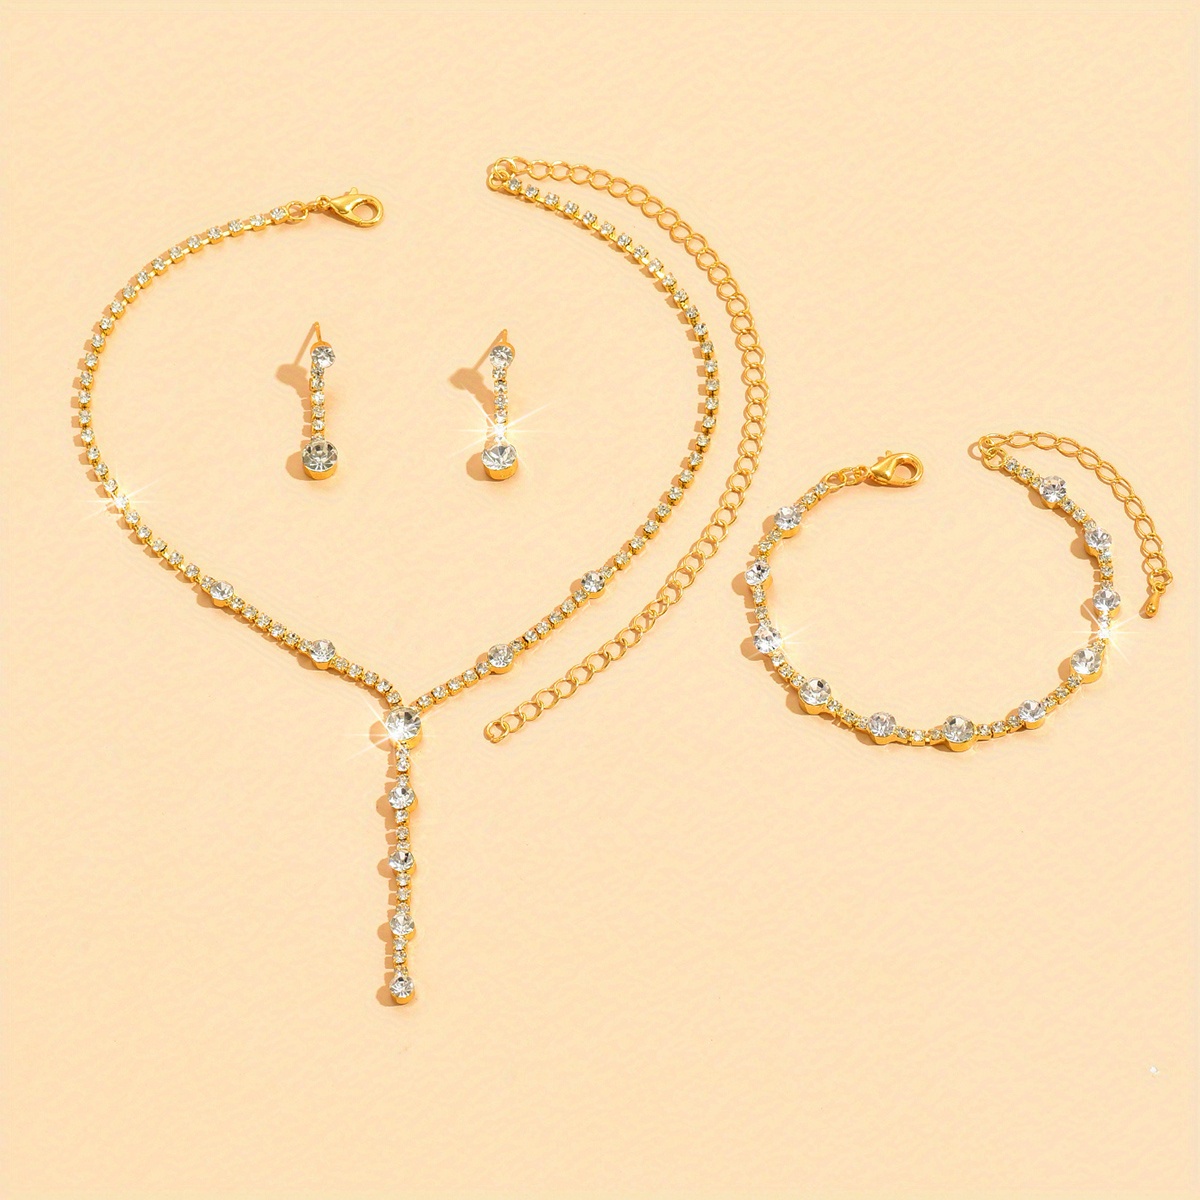 AYYUFE 4Pcs/Set Shiny Elegant Necklace Earrings Bracelet Ring Adjustable  Women Rhinestone Heart Pendant Necklace Set Jewelry Accessory